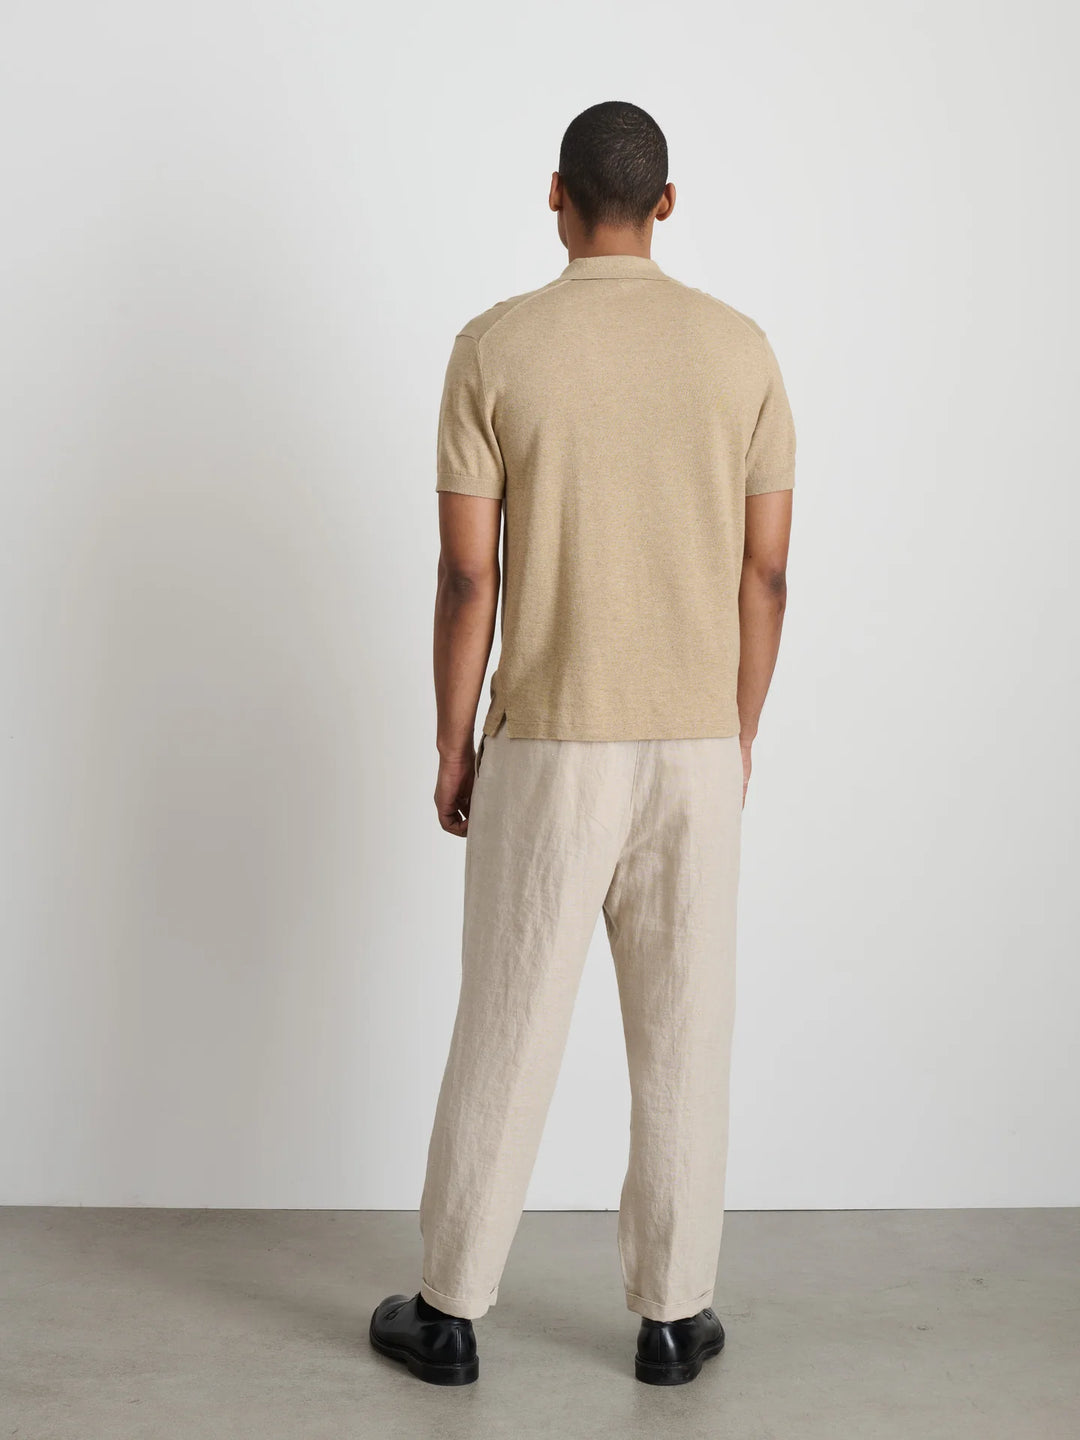 Aldrich Knit Shirt in Hemp Cotton